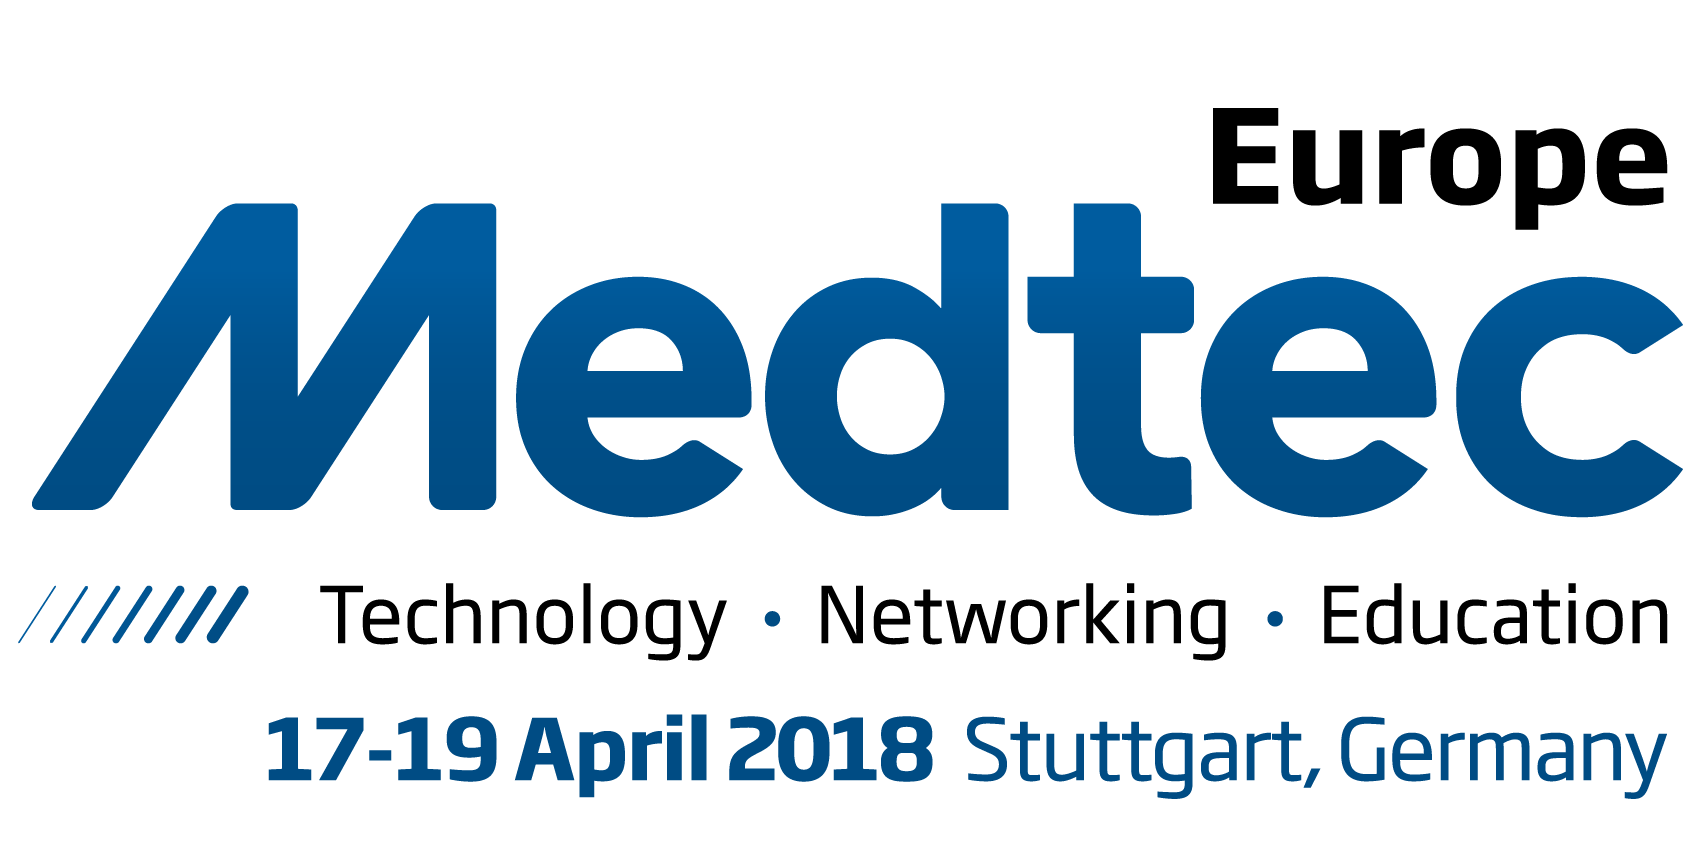 Atlantic Medtech Cluster at Medtec Europe 2018